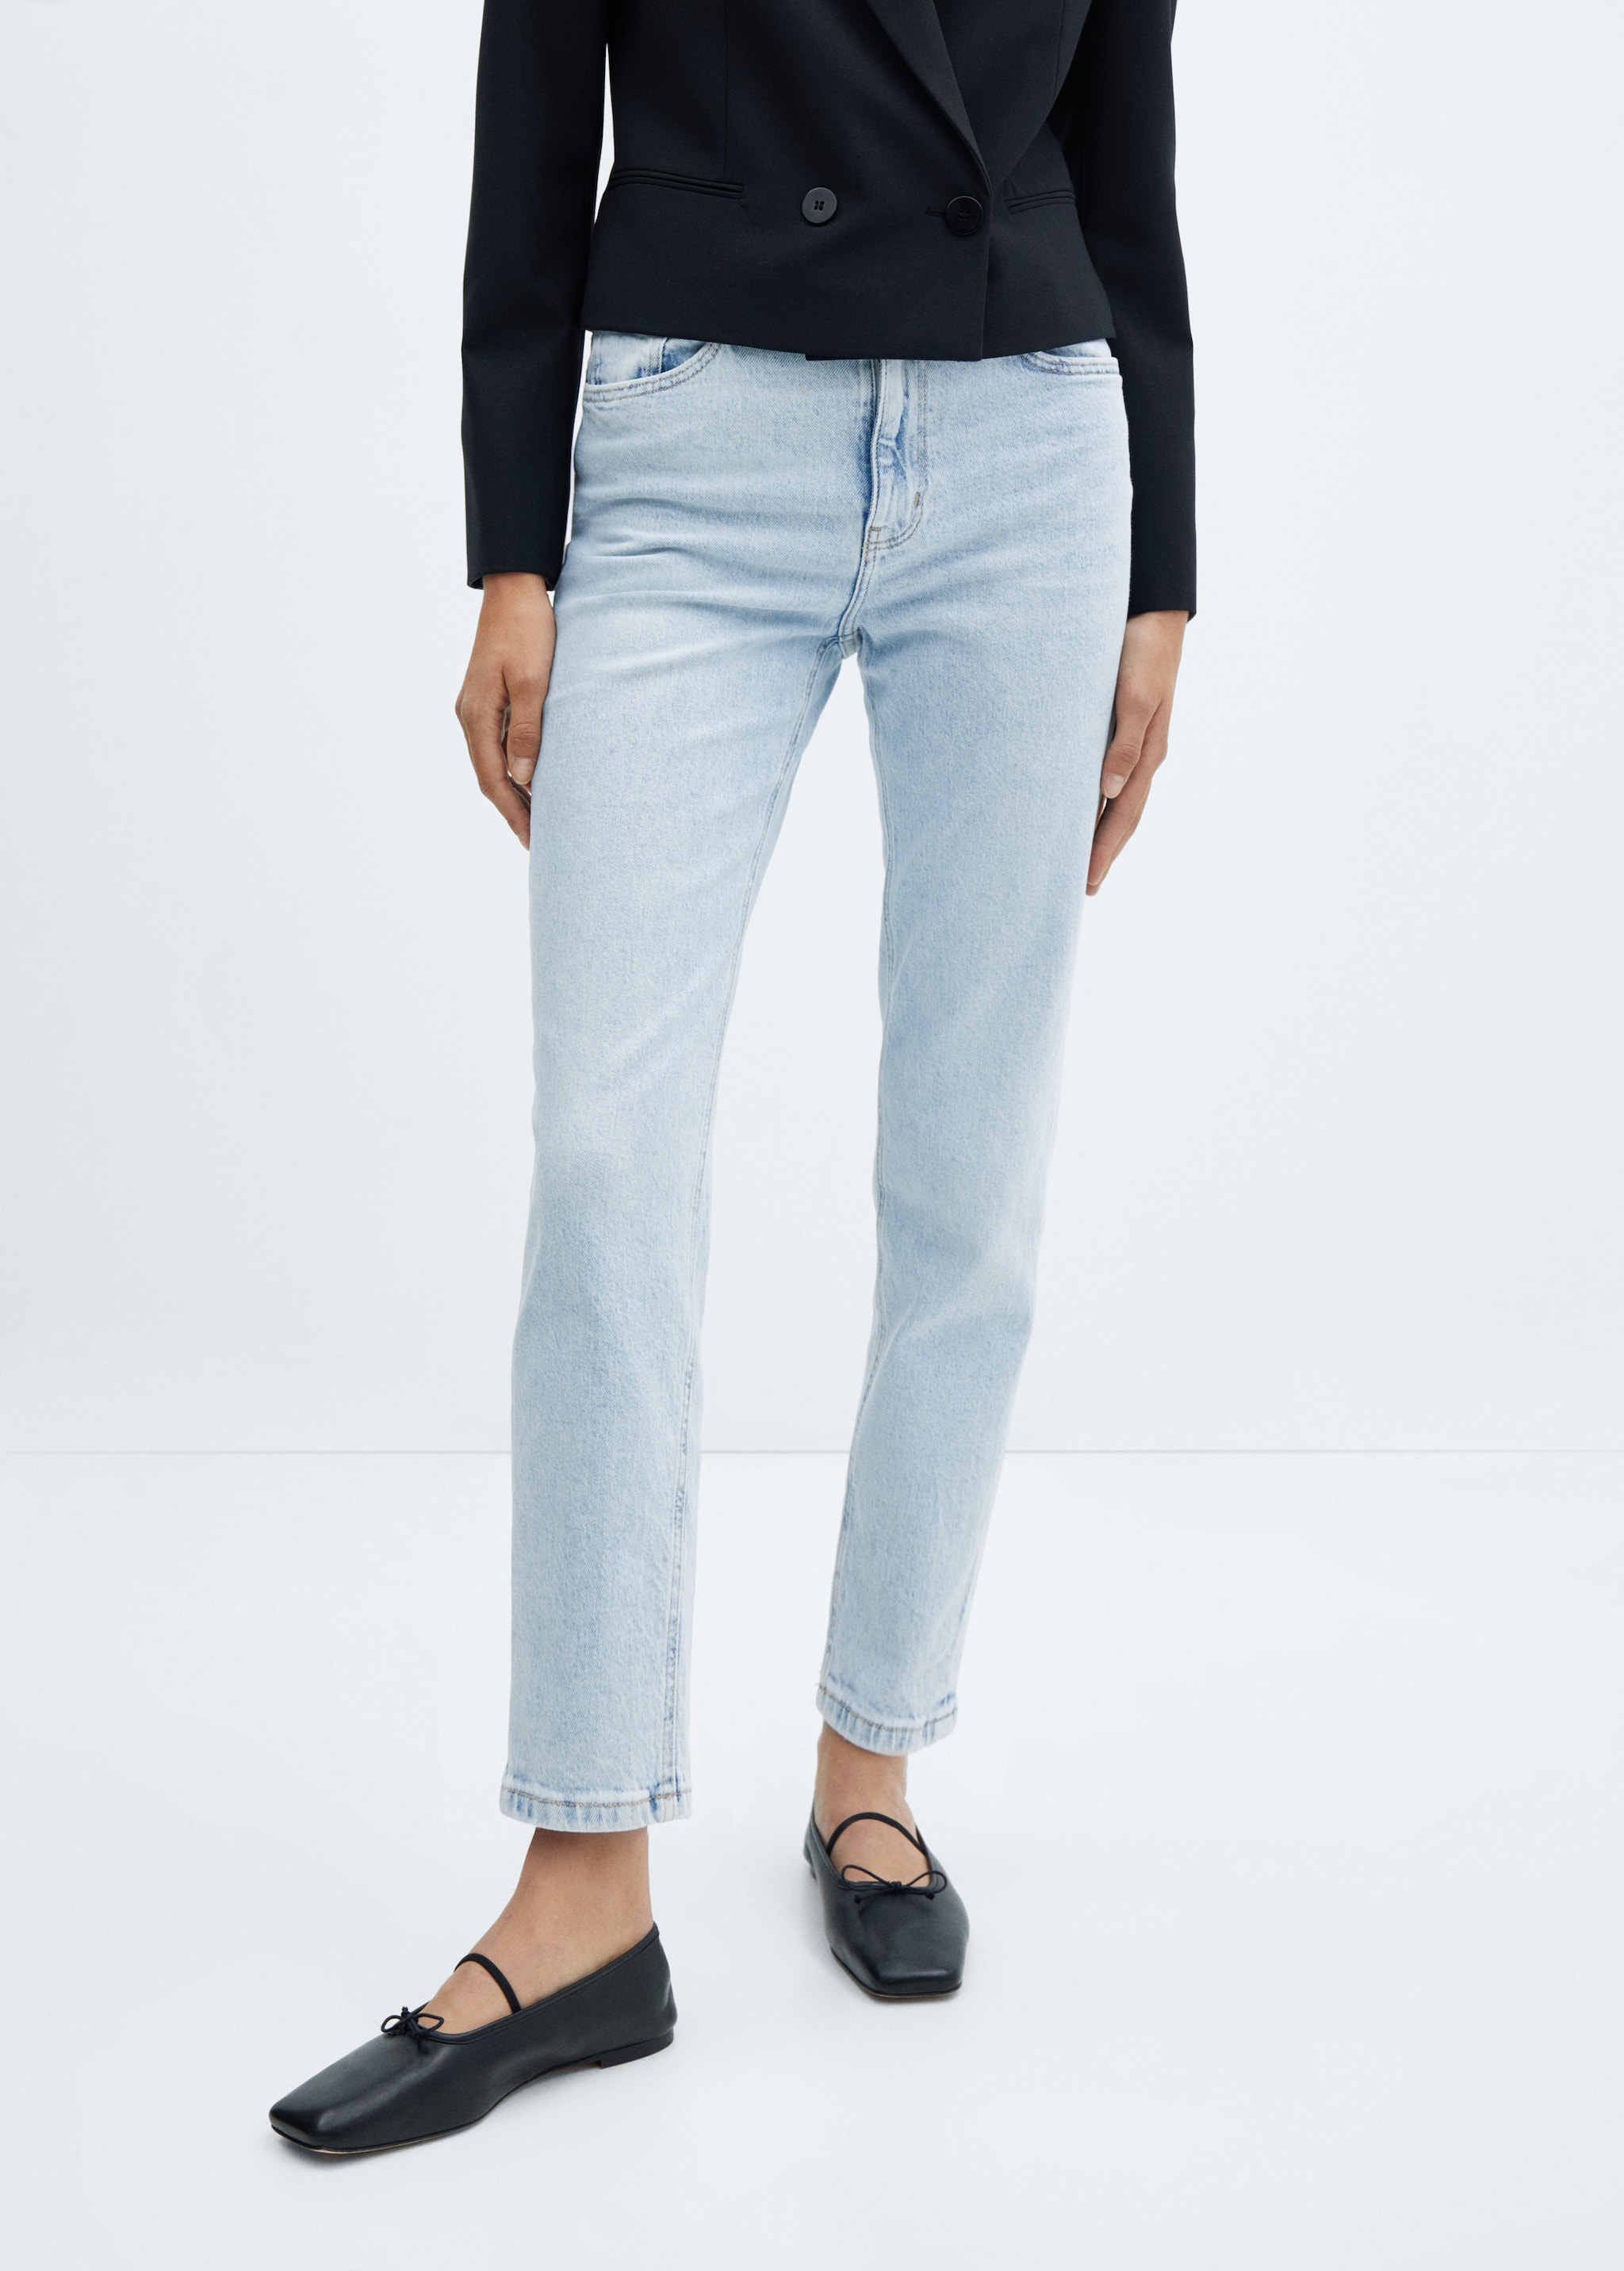 Jeans Newmom confort tiro alto - Plano medio